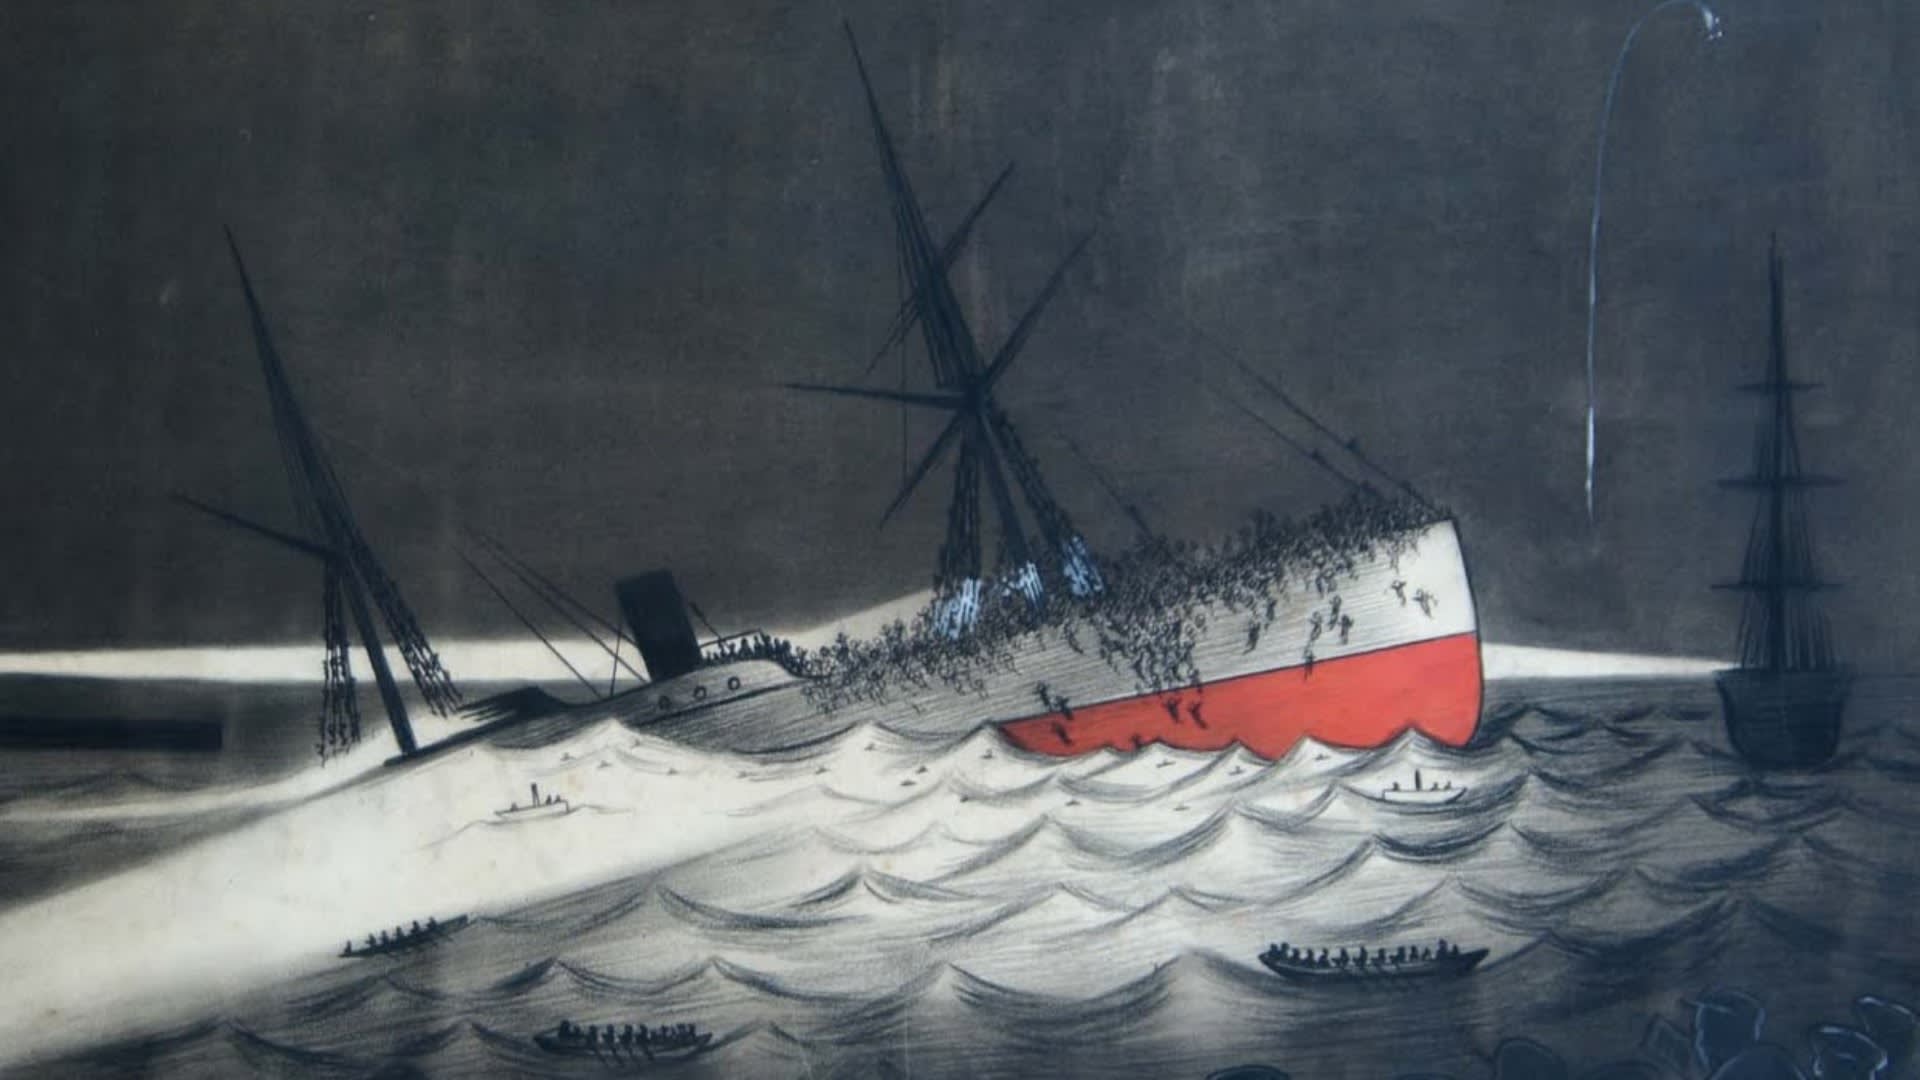 Skica znázorňující potopení SS Utopia